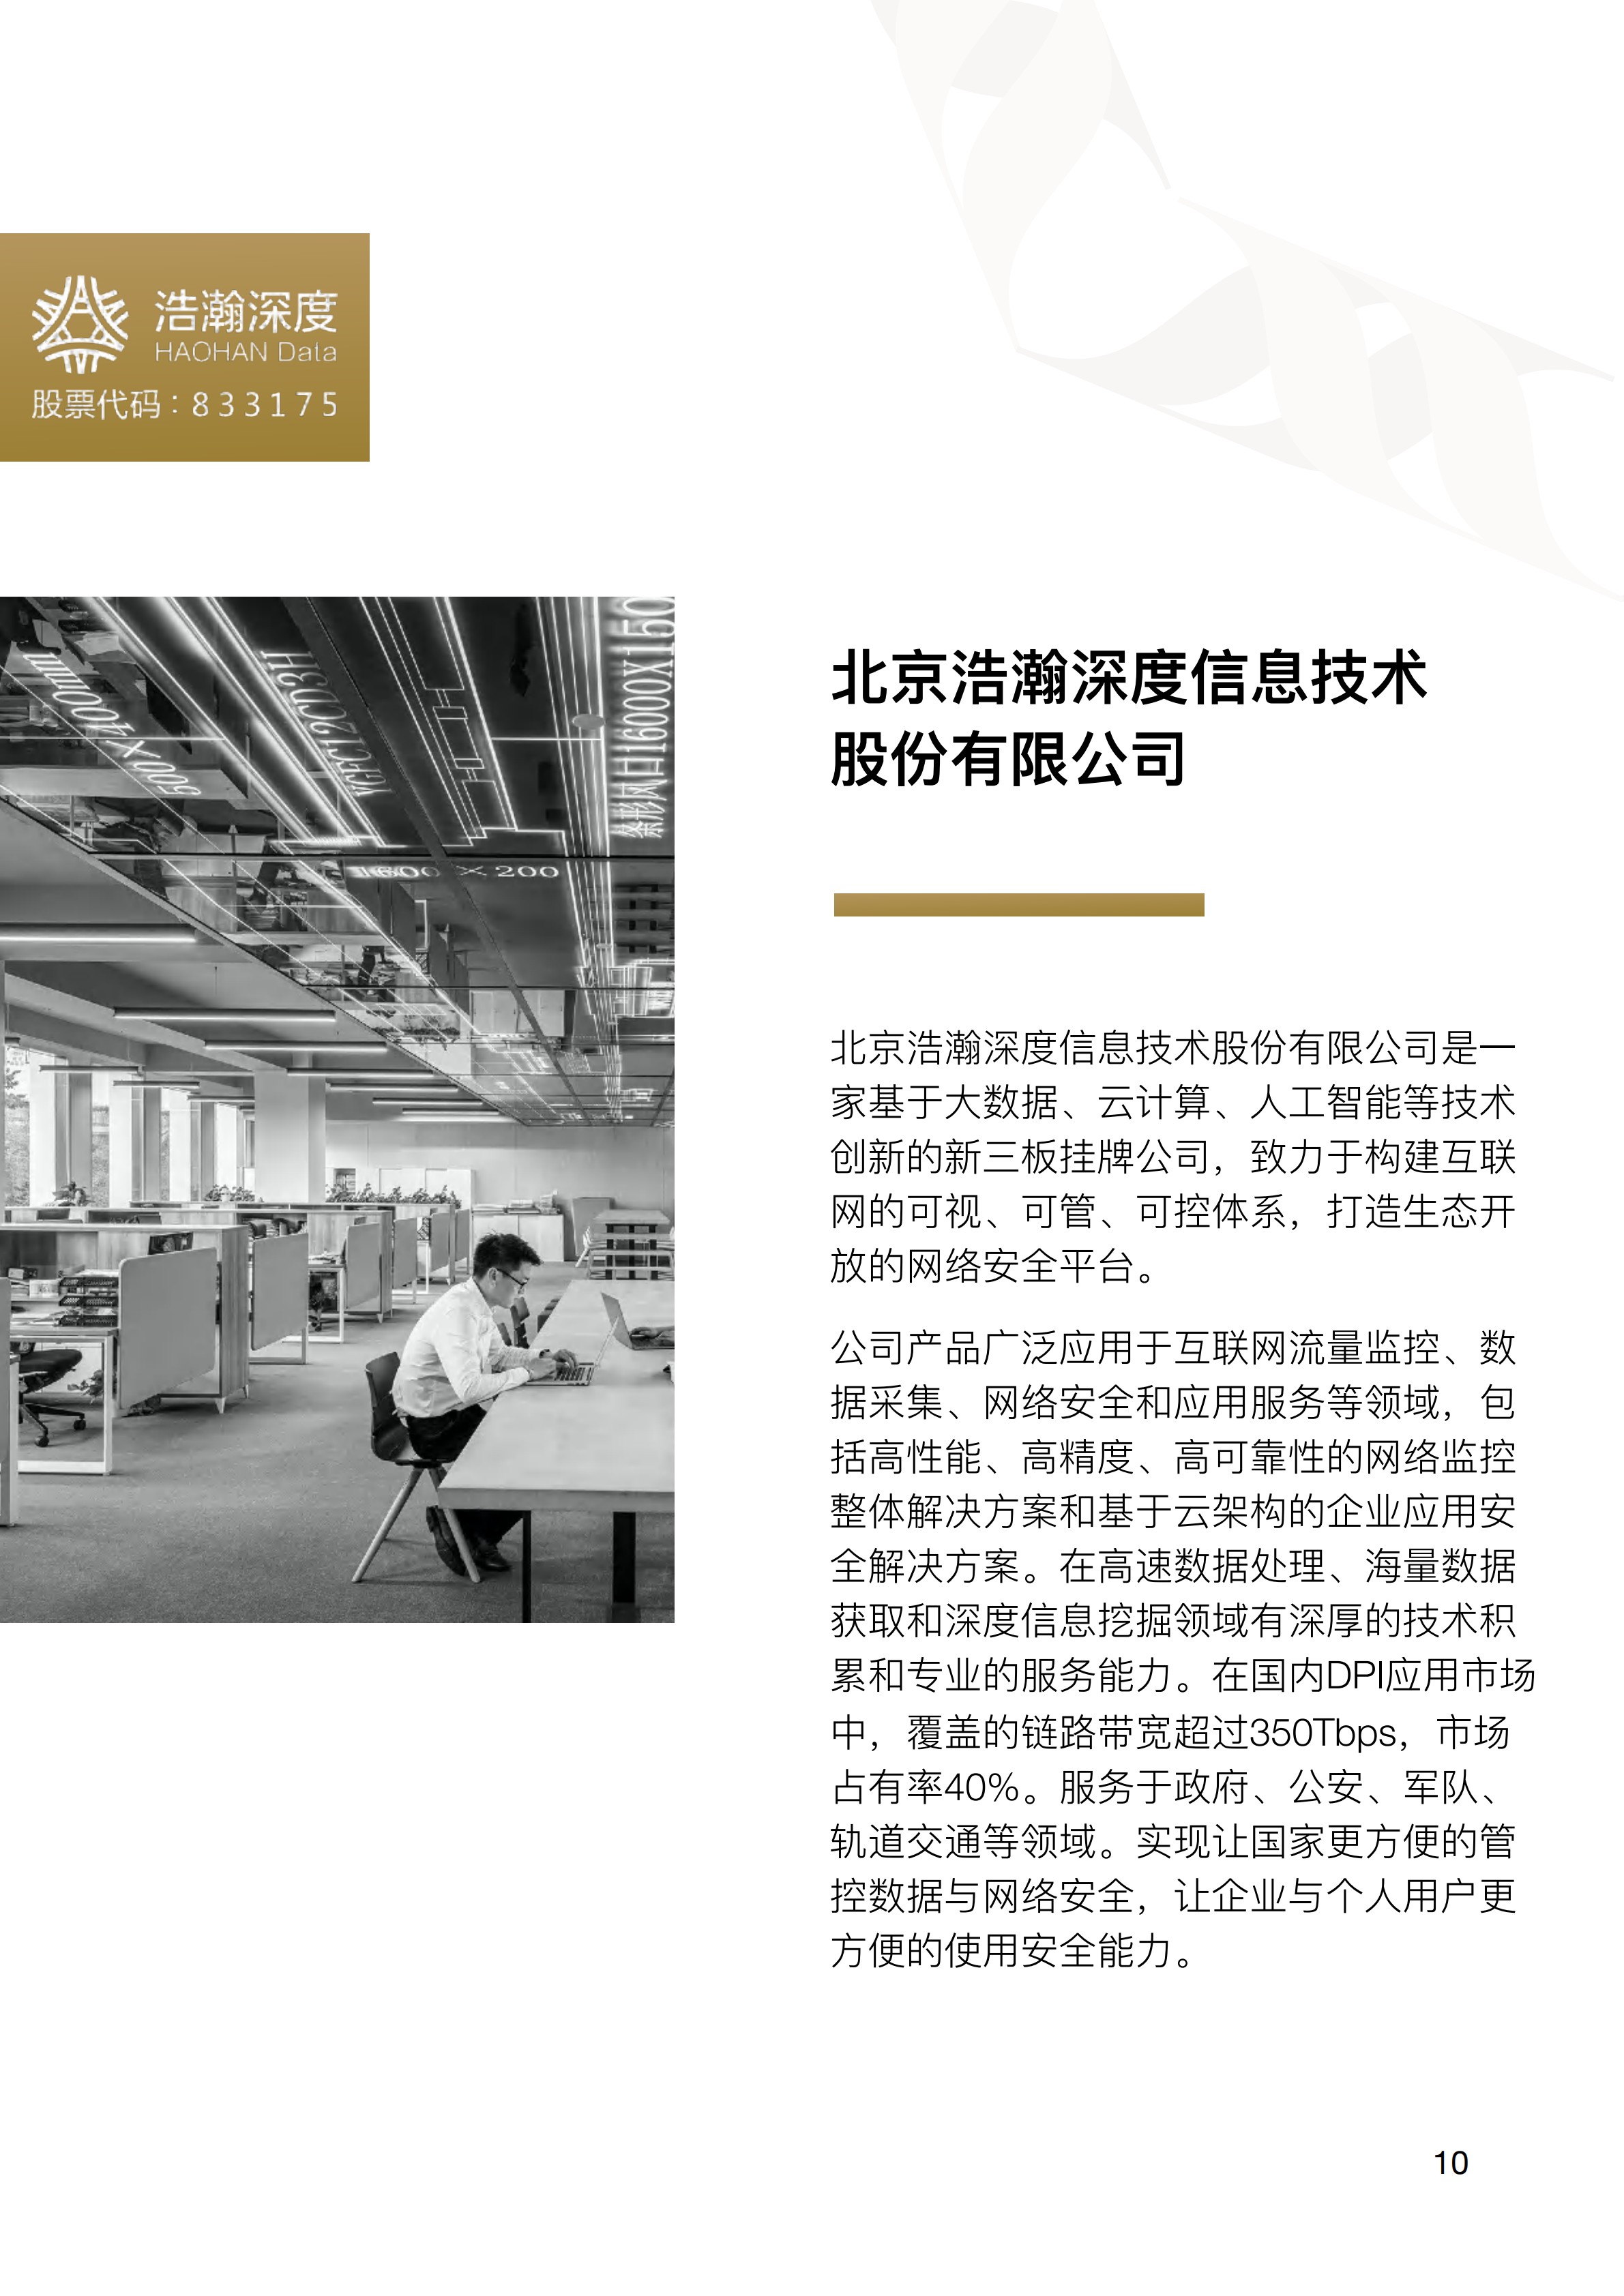 中关村出海产品手册(Chinese Simplified) 2020 Zhongguancun Product Handbook v1.0_13.jpg